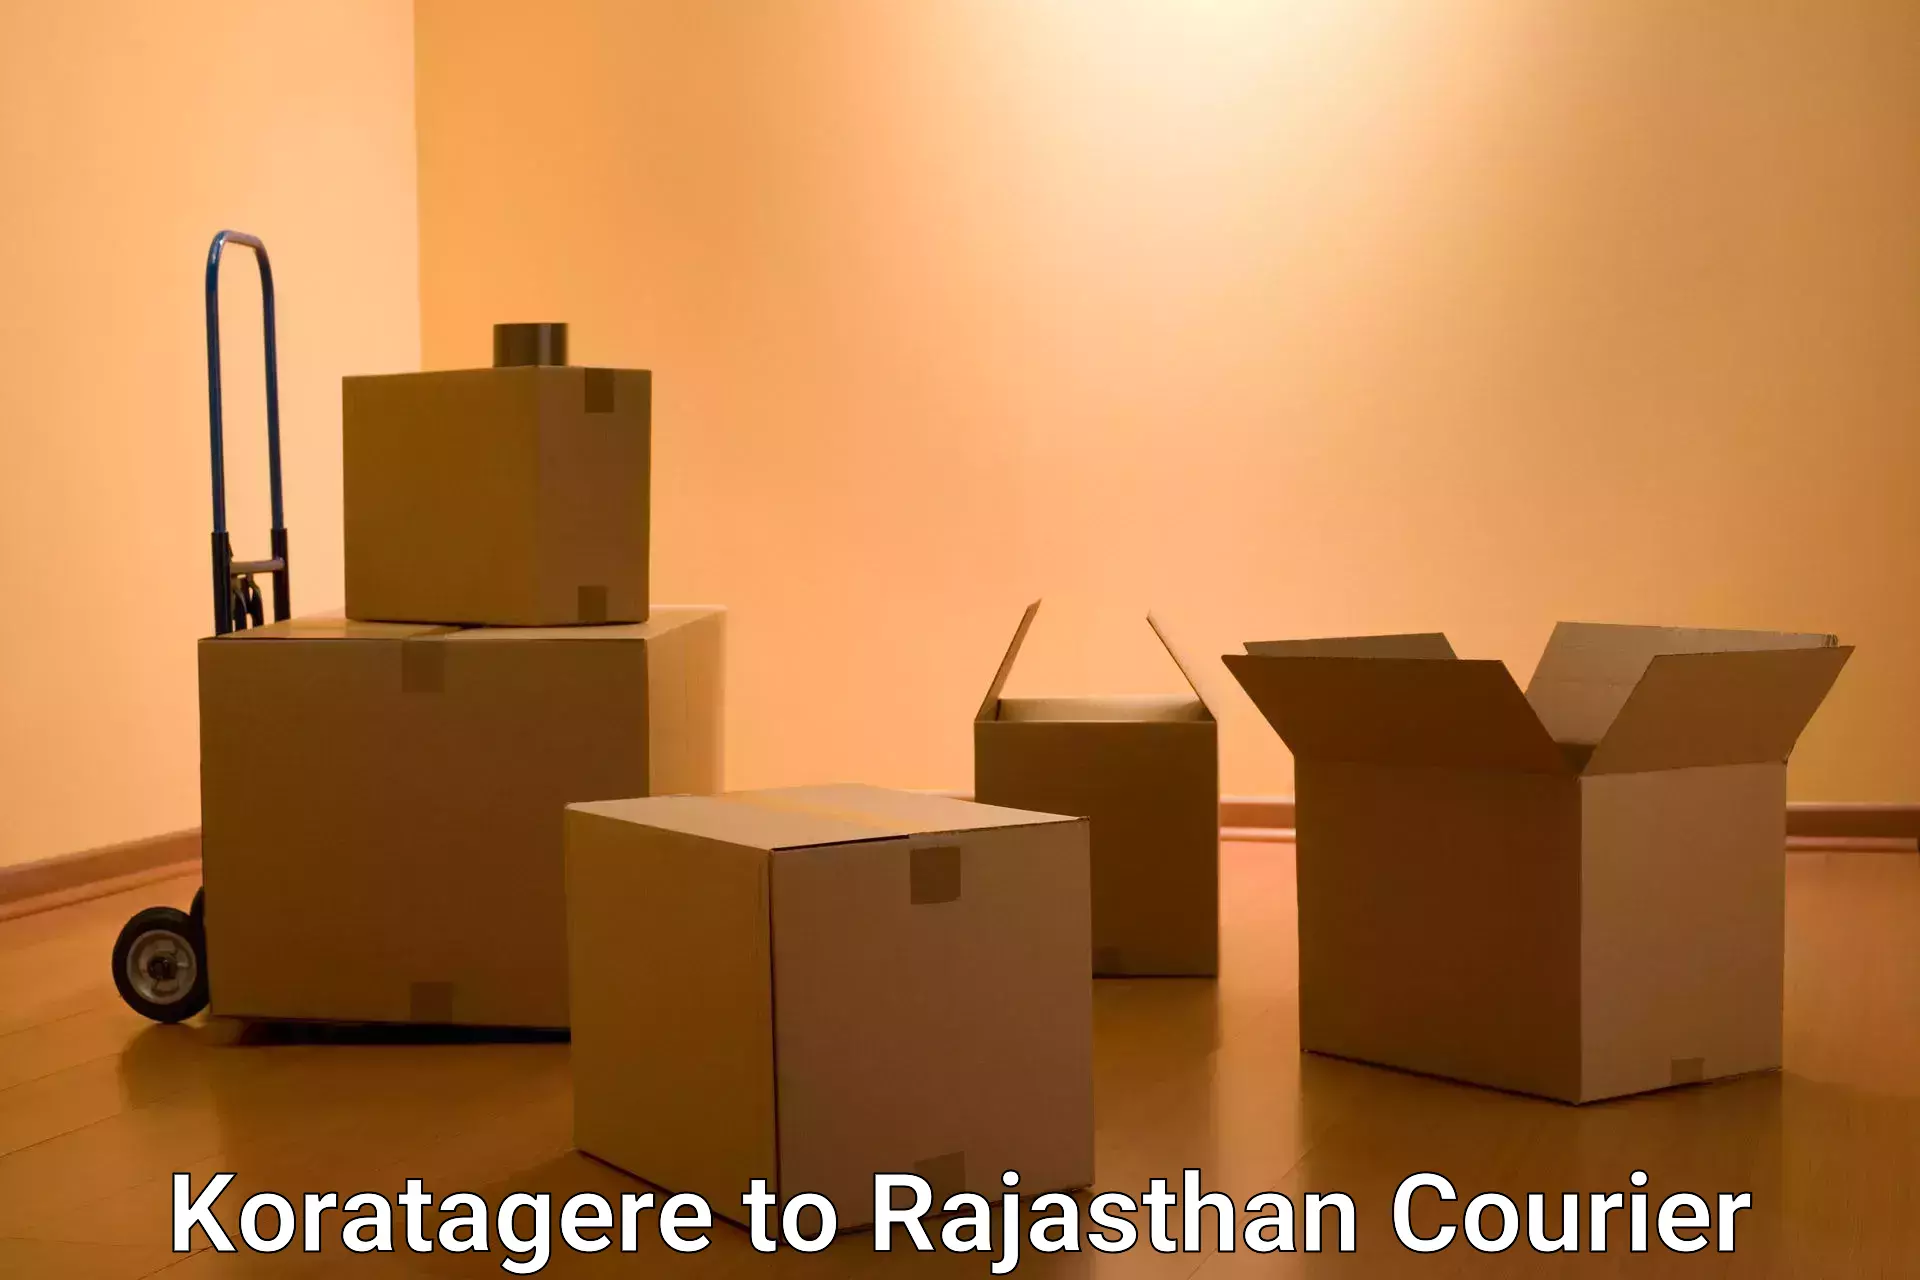 Nationwide parcel services Koratagere to Kushalgarh